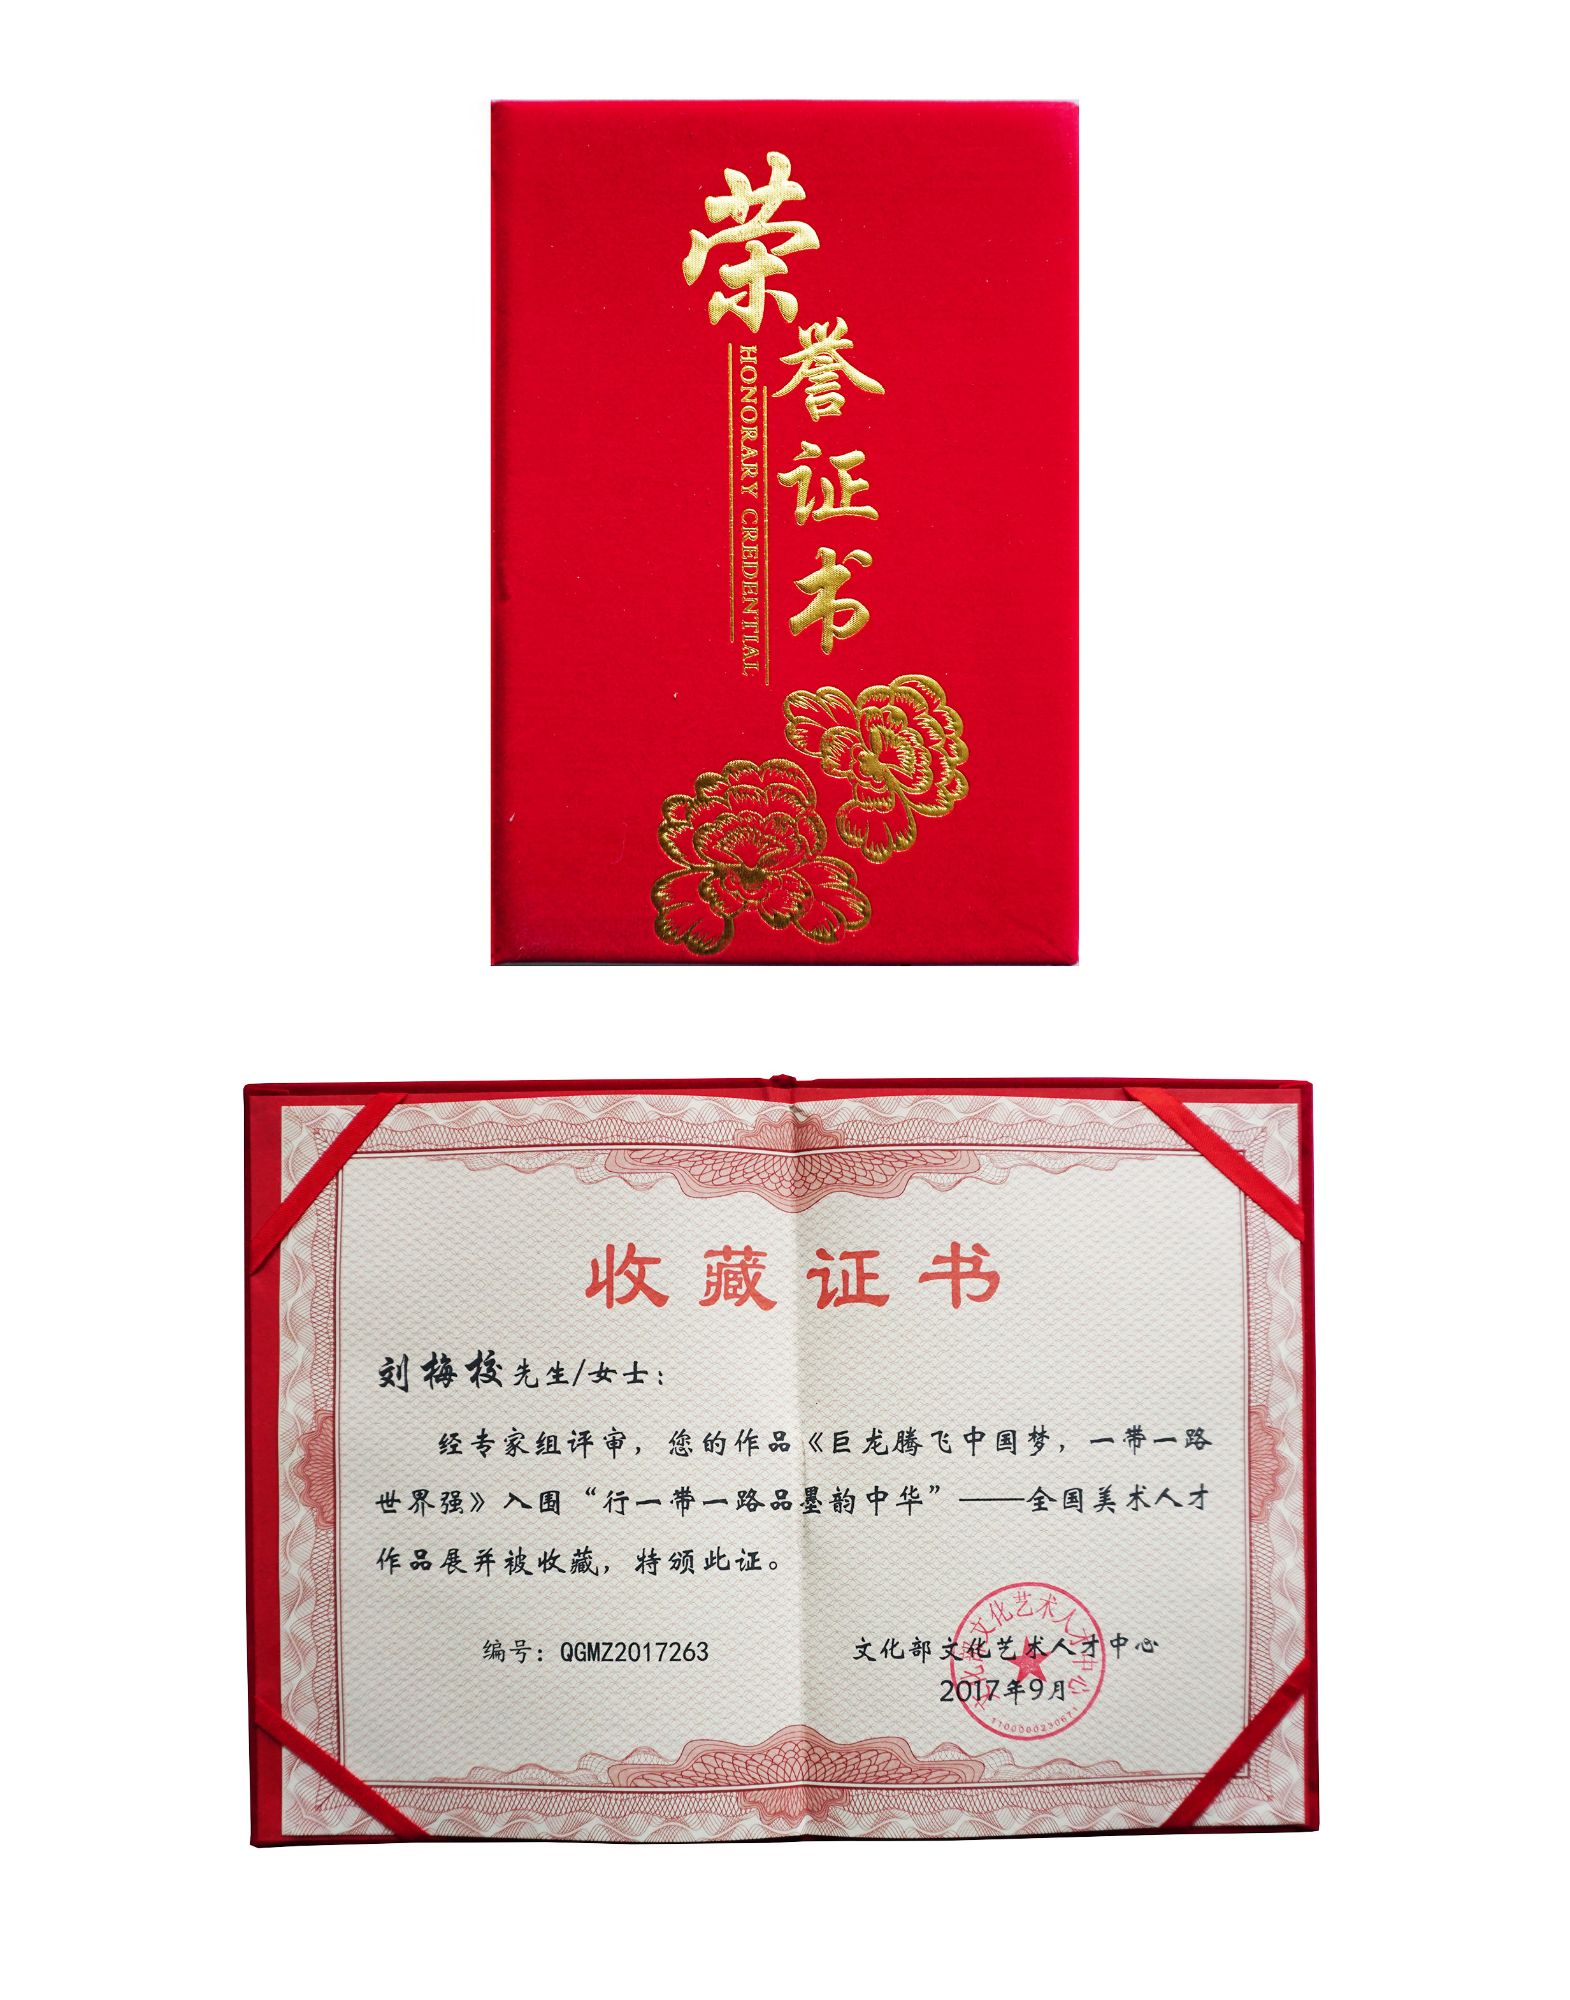 刘梅校先生获颁《巨龙腾飞中国梦，一带一路世界强》作品展收藏证书